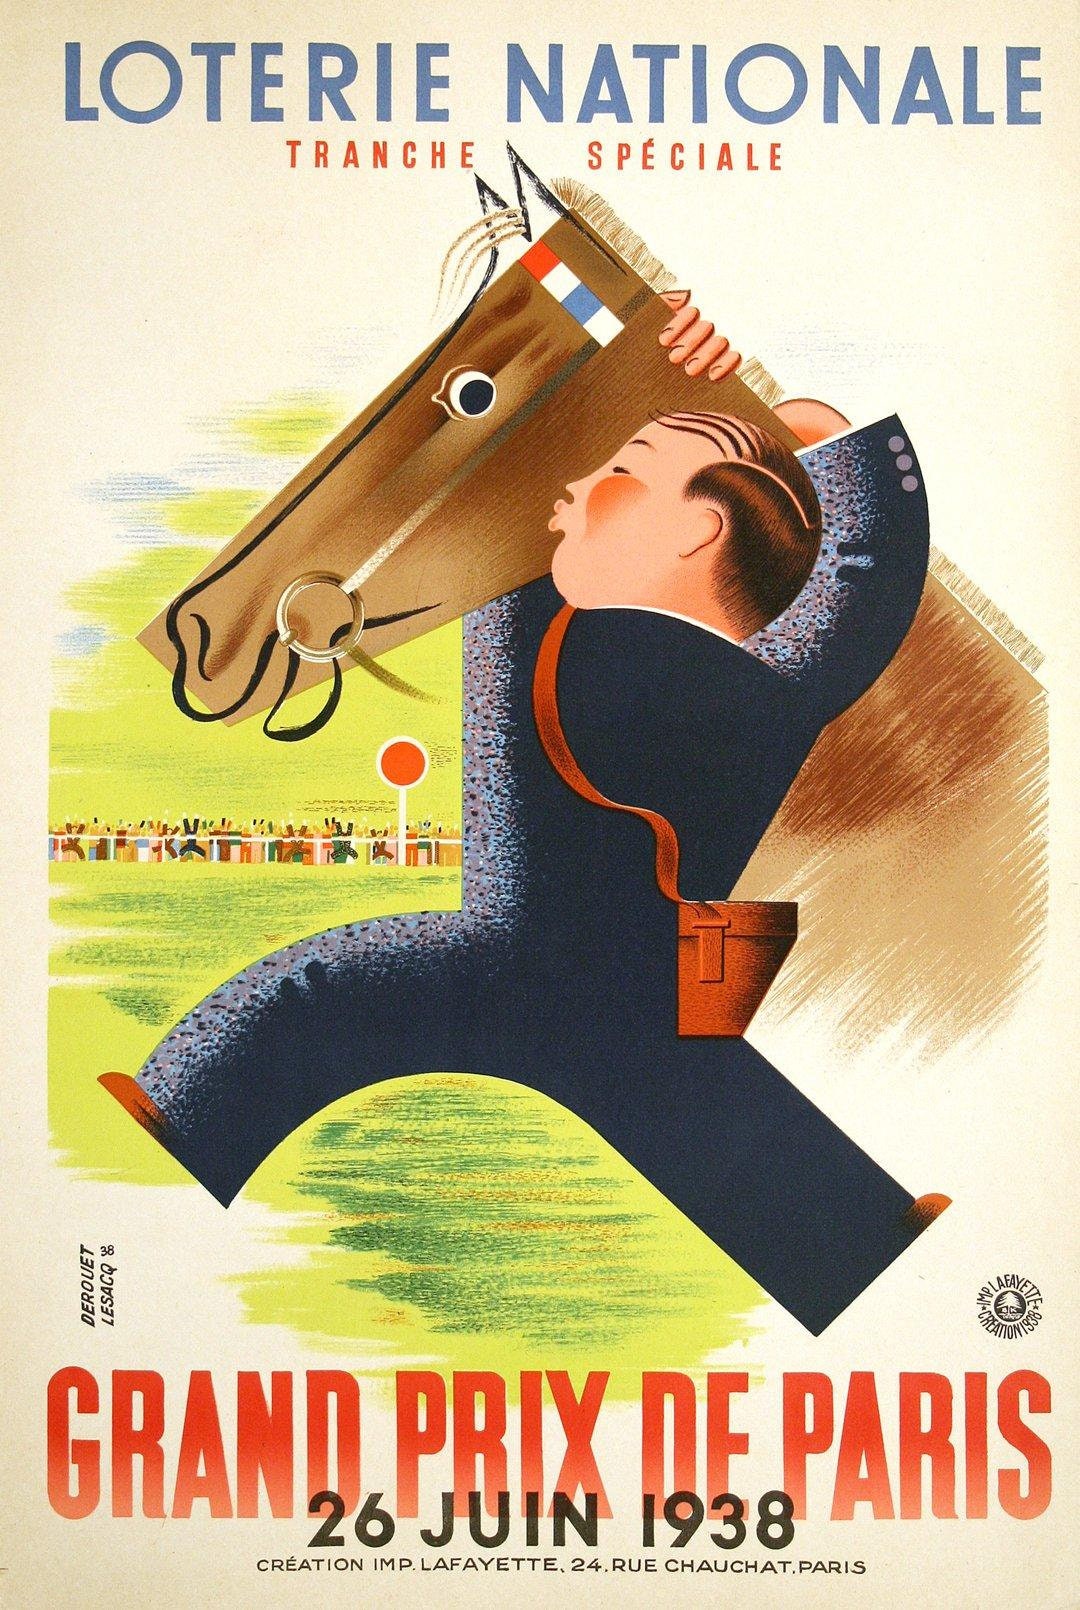 Loterie nationale grand prix paris 1938 by Derouet original | Etsy